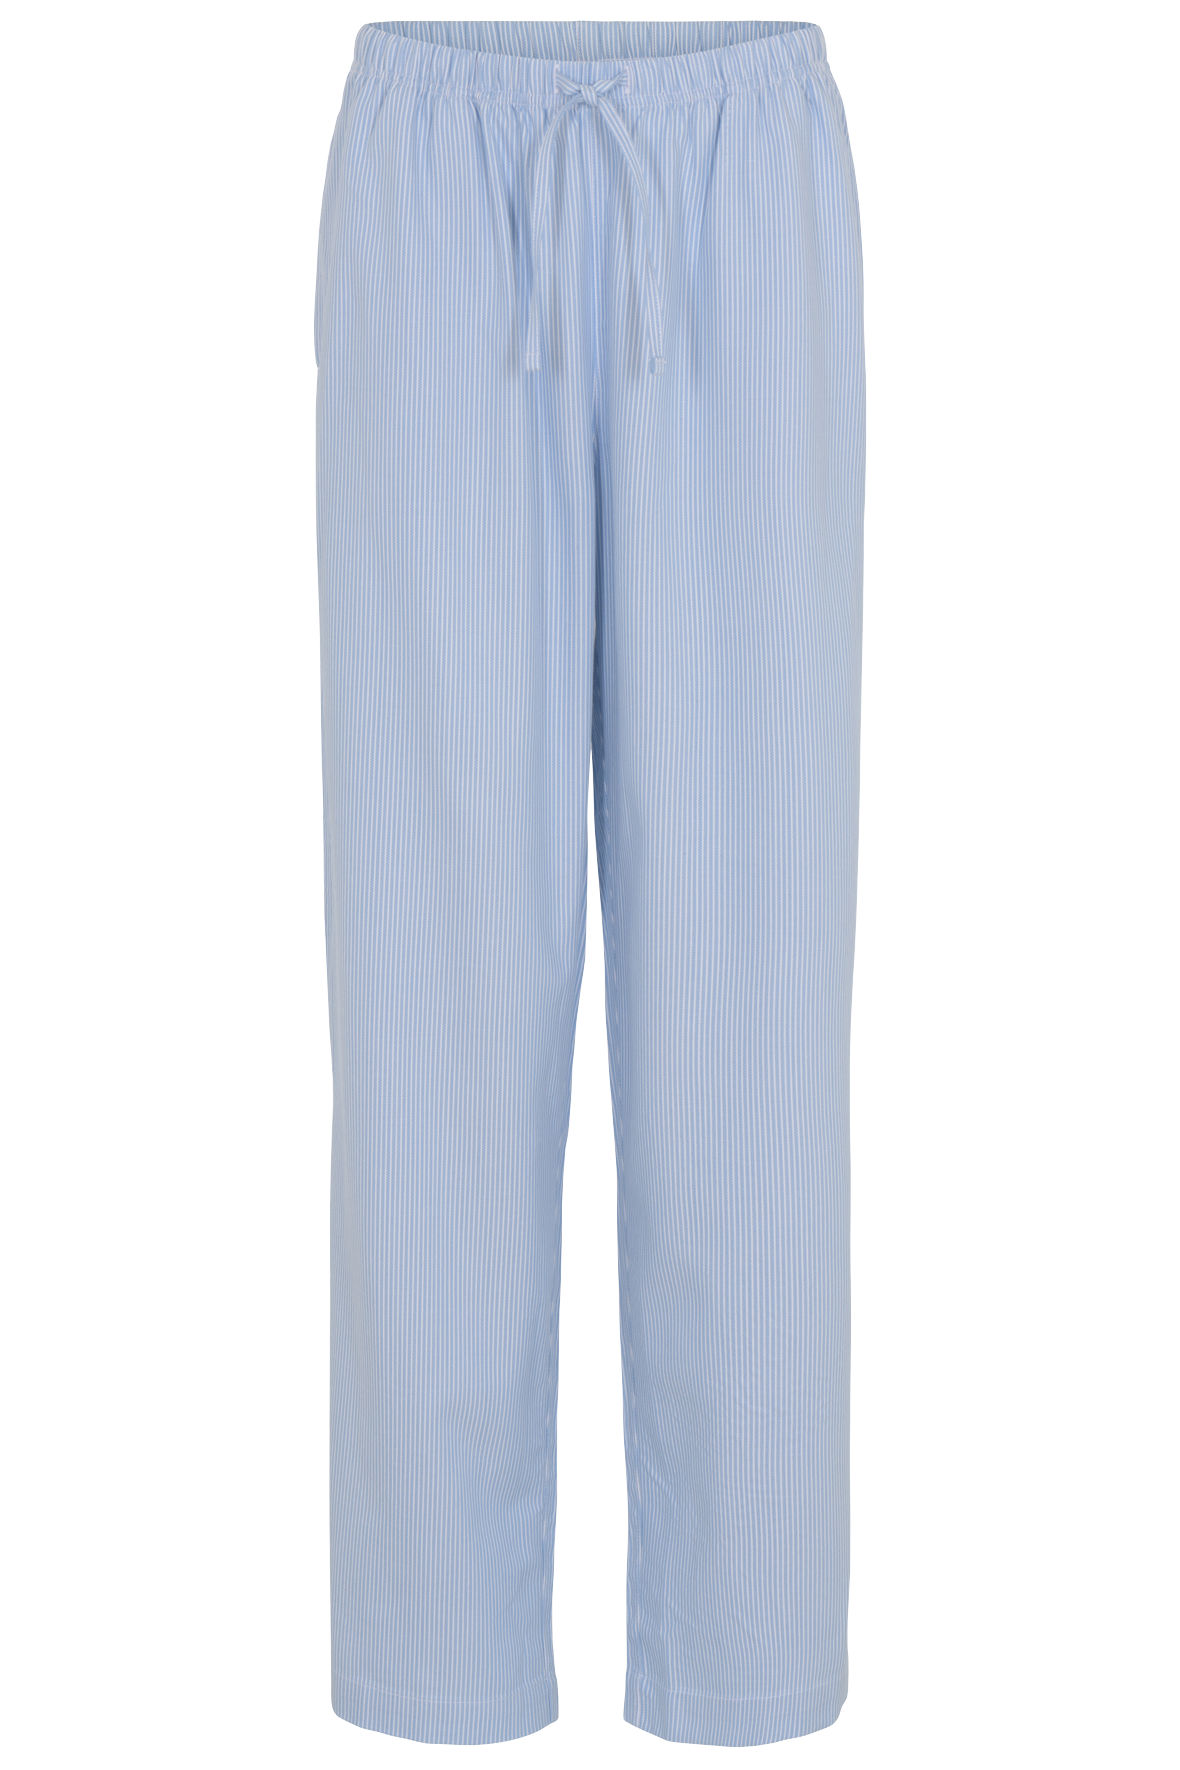 Fugtig lejlighed ugentlig JBS of Denmark stribet pyjamasbukser i hvid og lyseblå - KVINDE - Hos Lohse